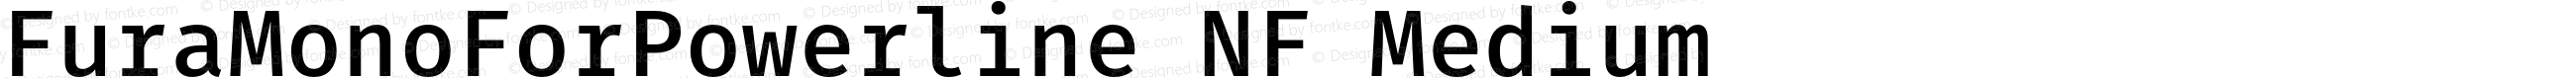 Fura Mono Medium for Powerline Nerd Font Plus Pomicons Plus Font Linux Mono Windows Compatible